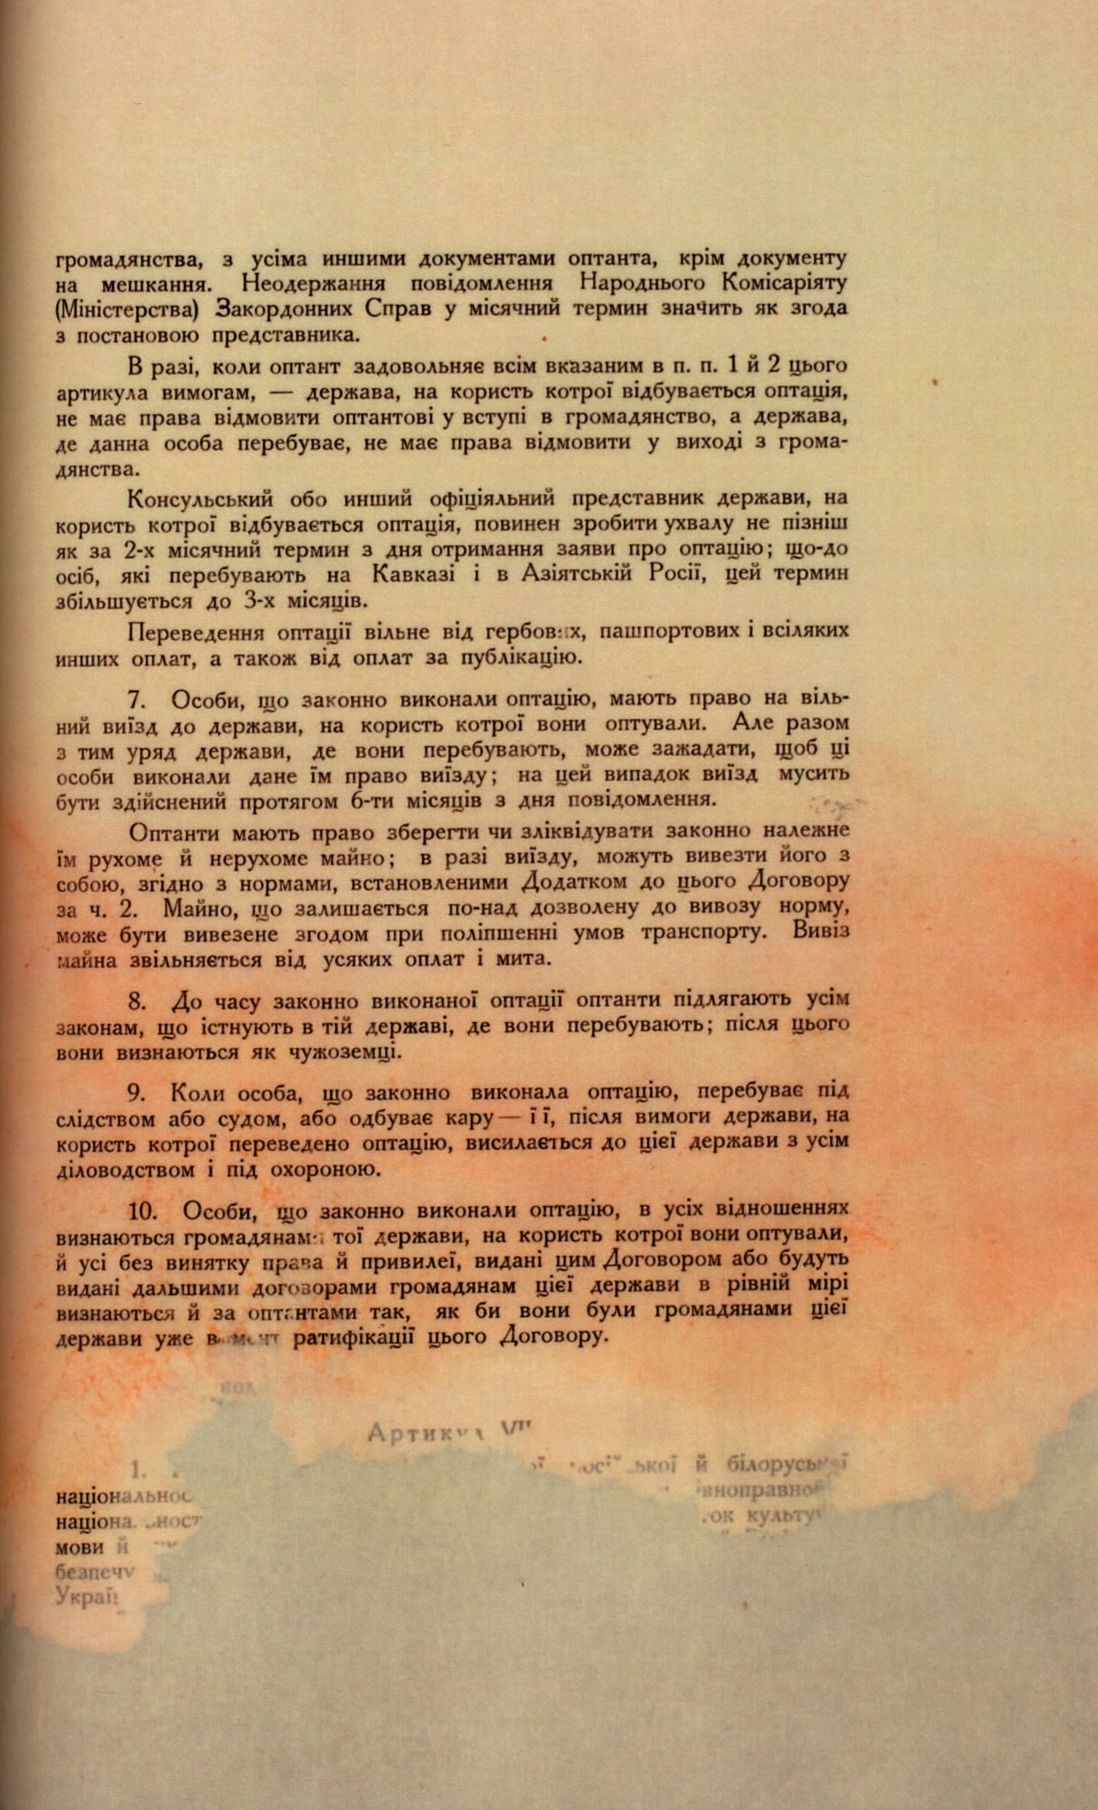 Traktat Pokoju między Polską a Rosją i Ukrainą podpisany w Rydze dnia 18 marca 1921 roku, s. 41, MSZ, sygn. 6739.